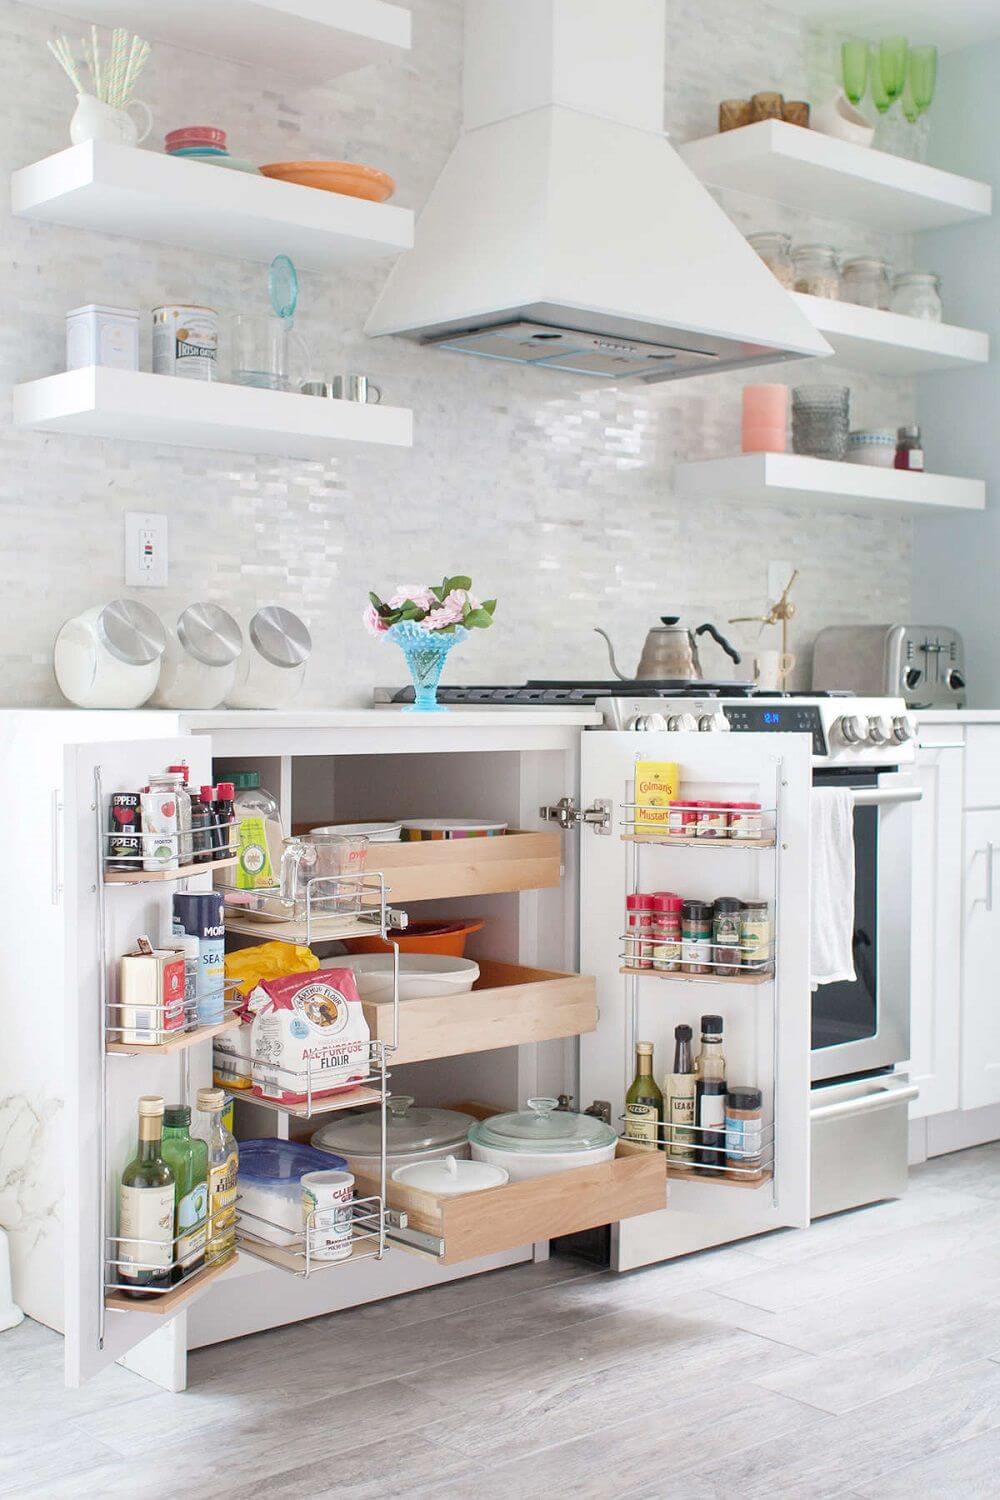 Phòng bếp của bạn đang để đồ đạc lung tung, cảm giác bừa bộn khiến bạn không thích thú khi vào đó? Hãy để chúng tôi giúp bạn sắp xếp phòng bếp gọn gàng, tươi sáng trở lại và trở thành không gian thật sự tuyệt vời.